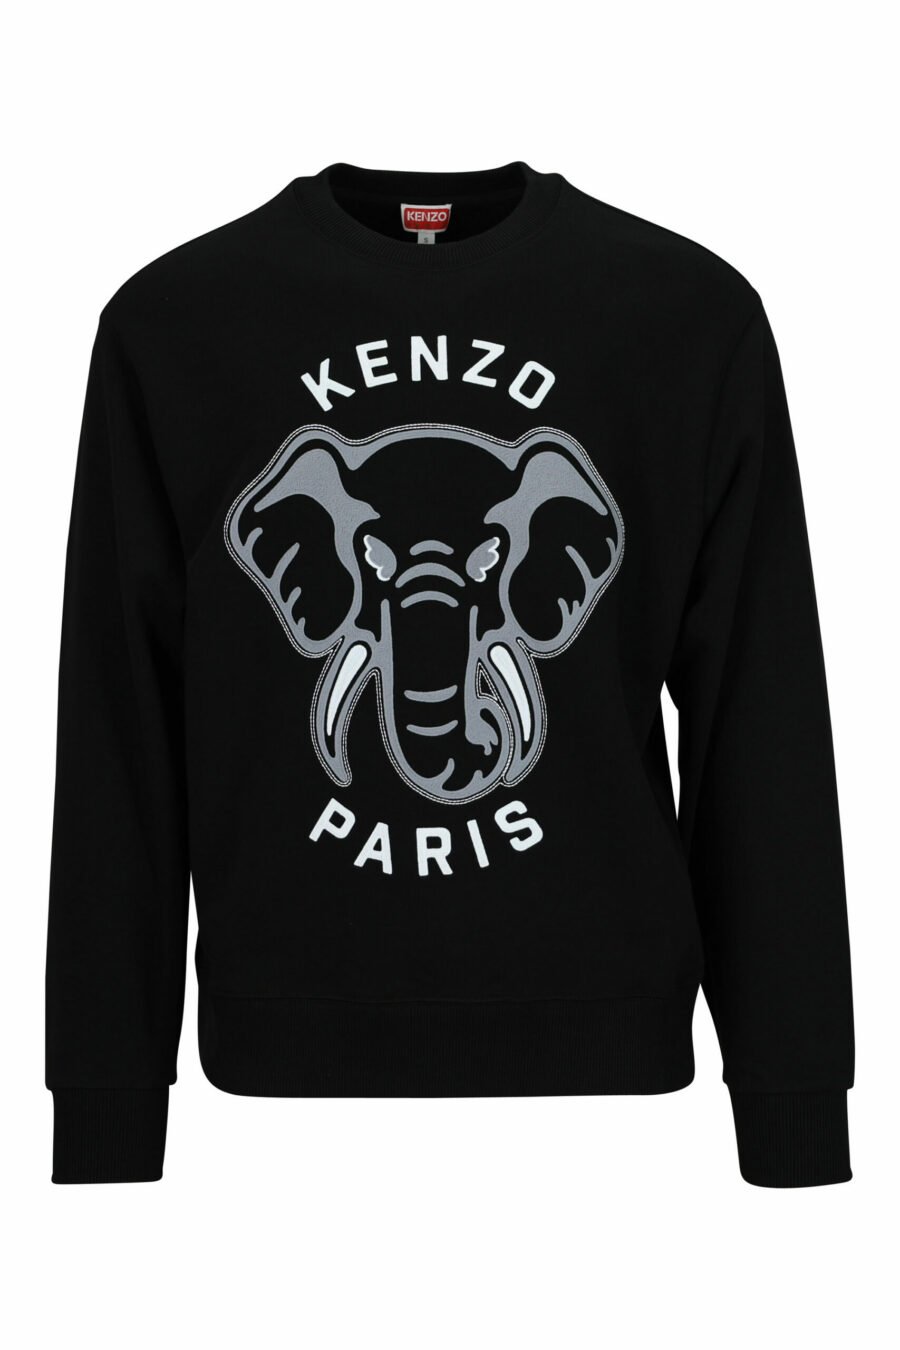 Schwarzes Sweatshirt in Übergröße mit großem, geprägtem Elefanten-Logo - 3612230552777 skaliert